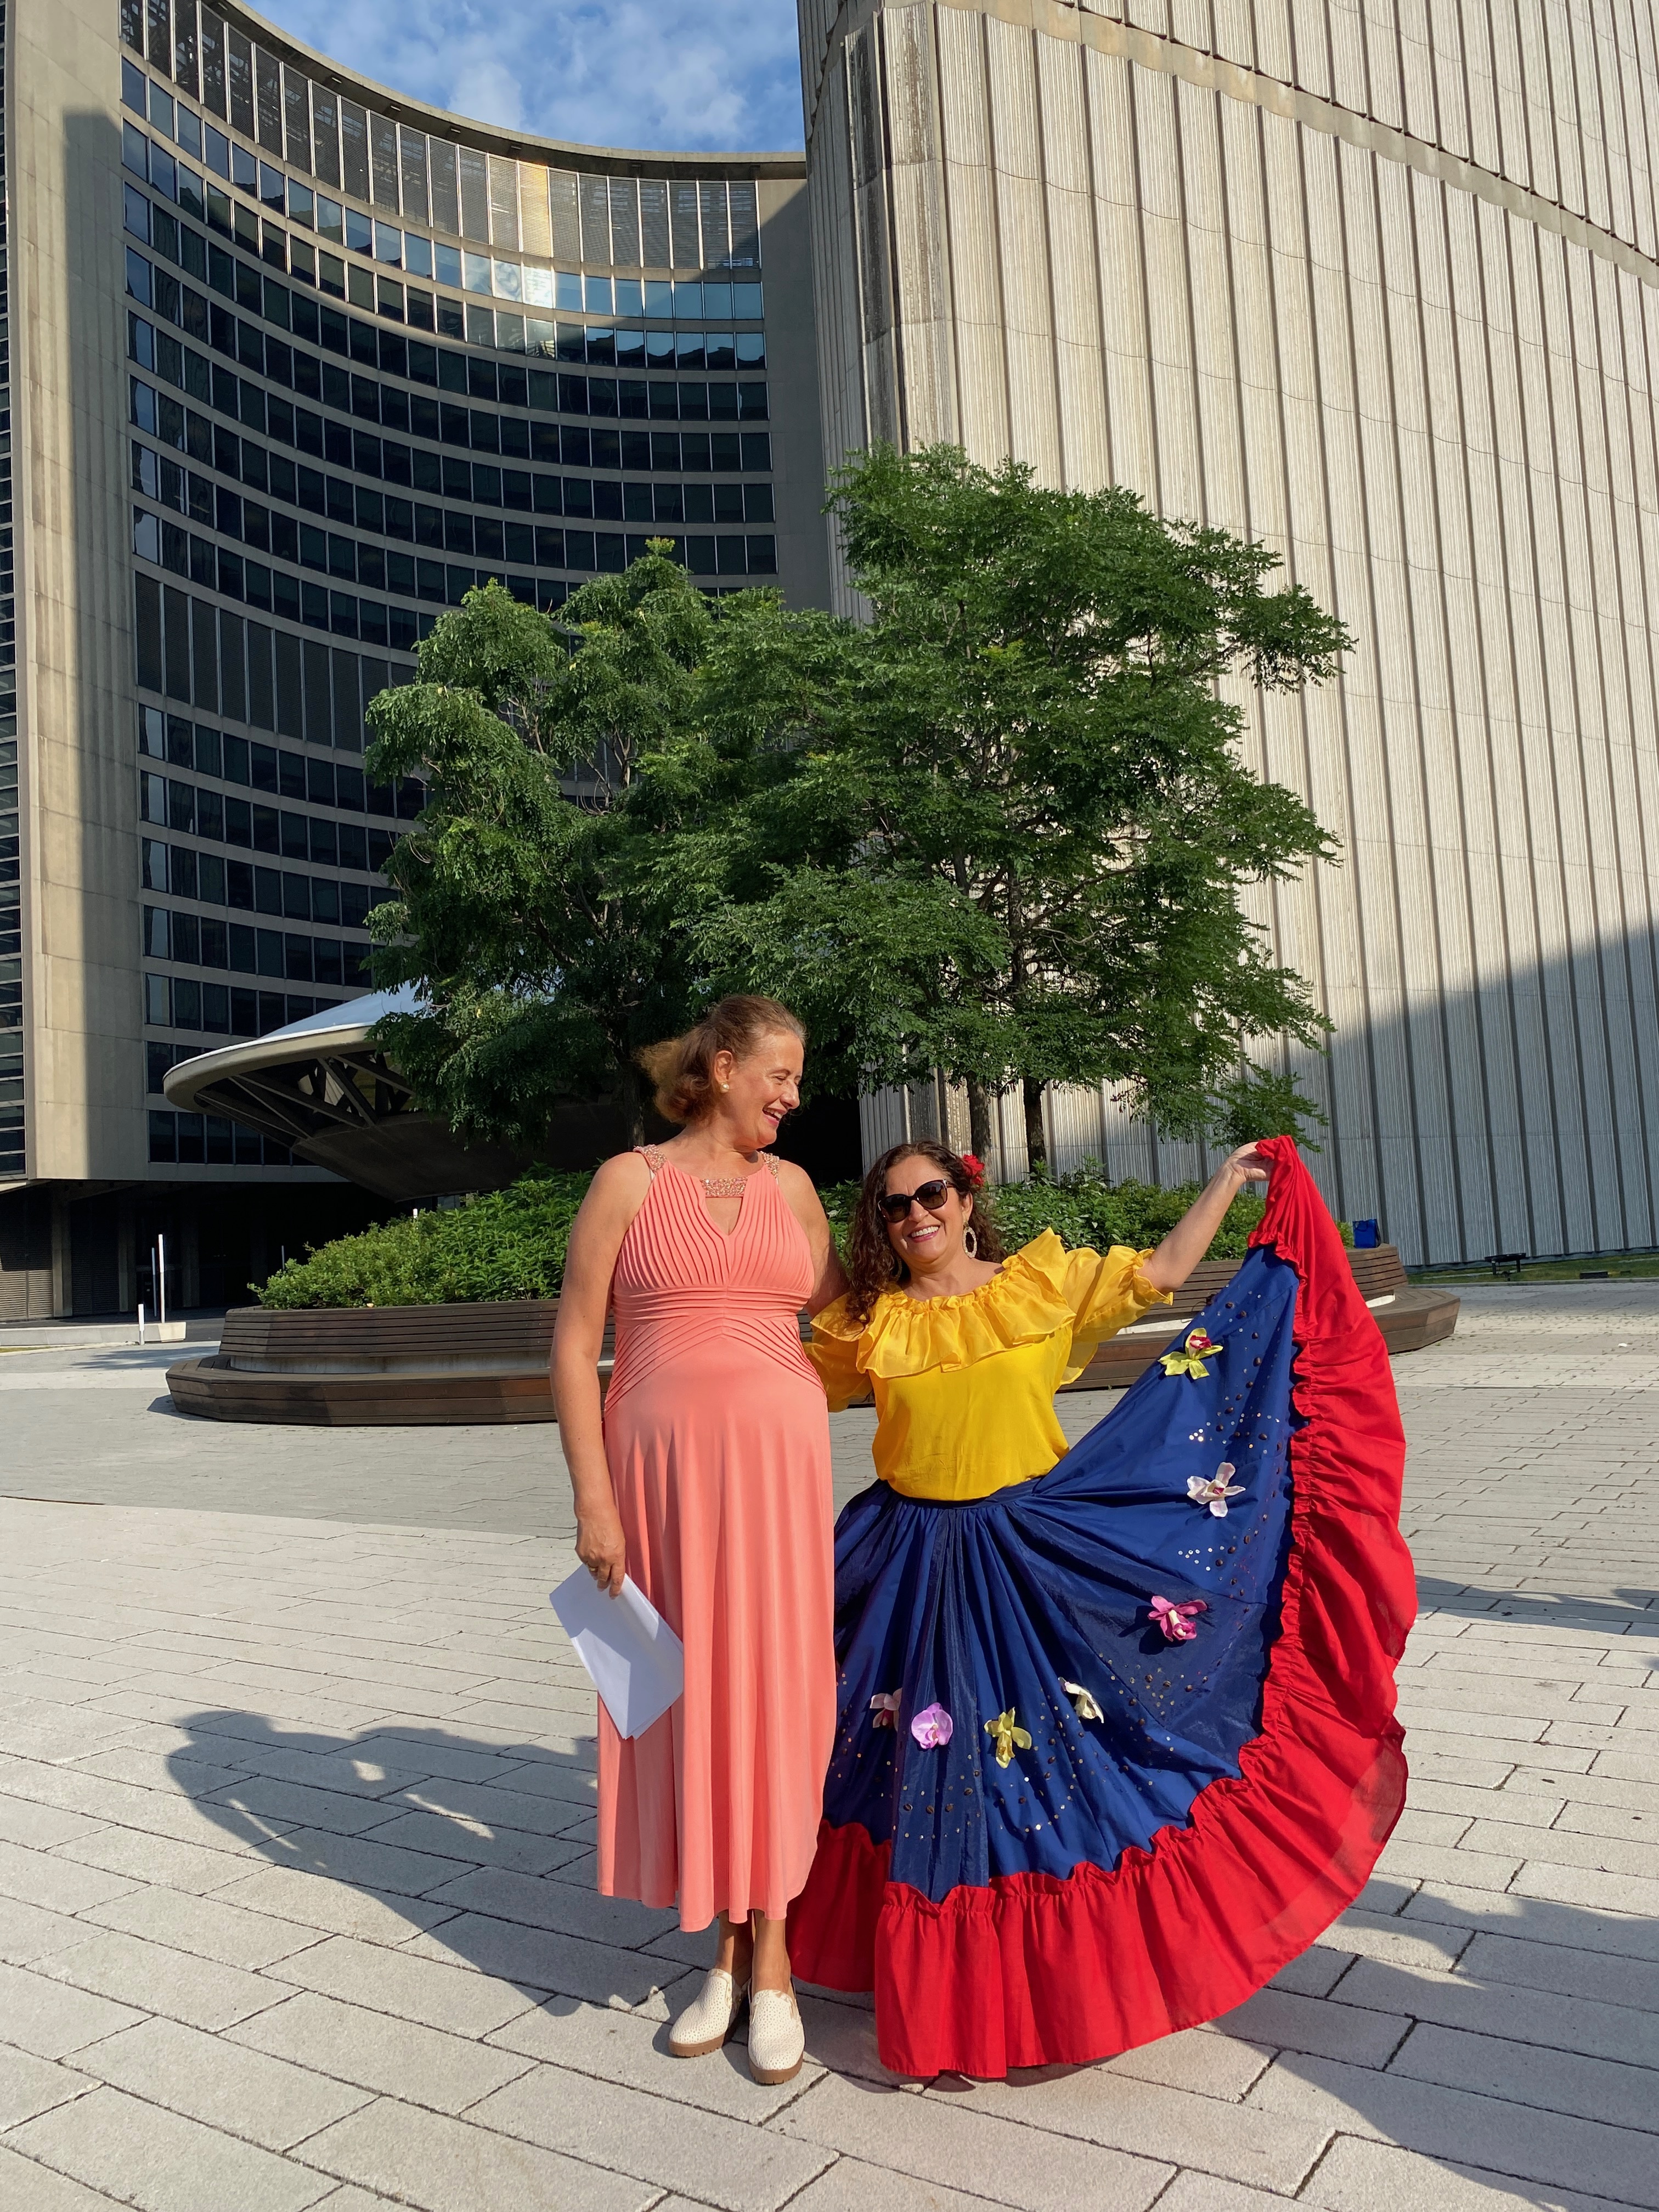 Bandera colombiana fue izada en el City Hall de Toronto